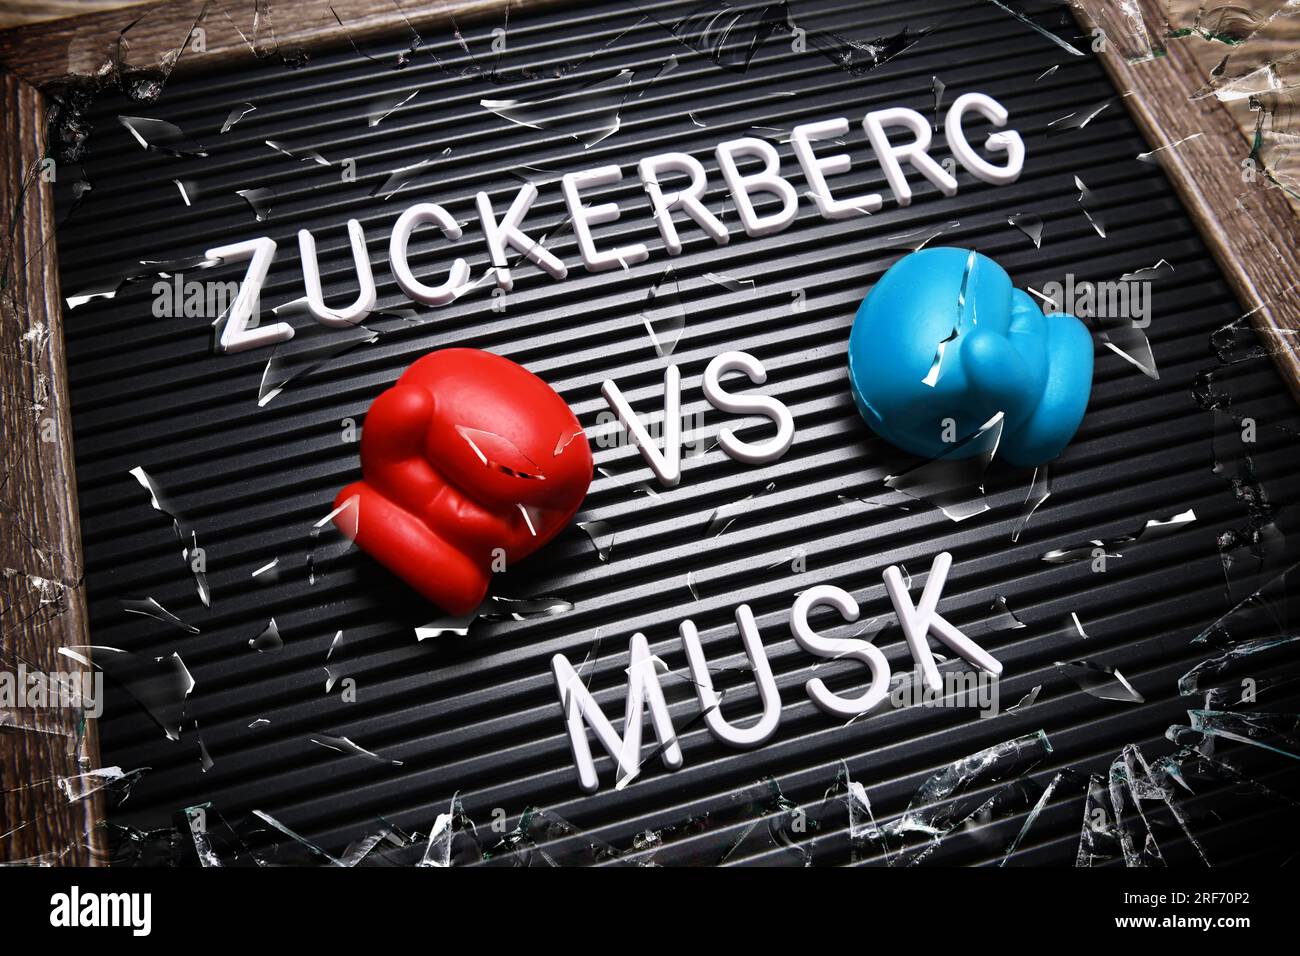 FOTOMONTAGE, Auf einer Tafel mit Boxhandschuhen steht Zuckerberg vs Musk Stock Photo